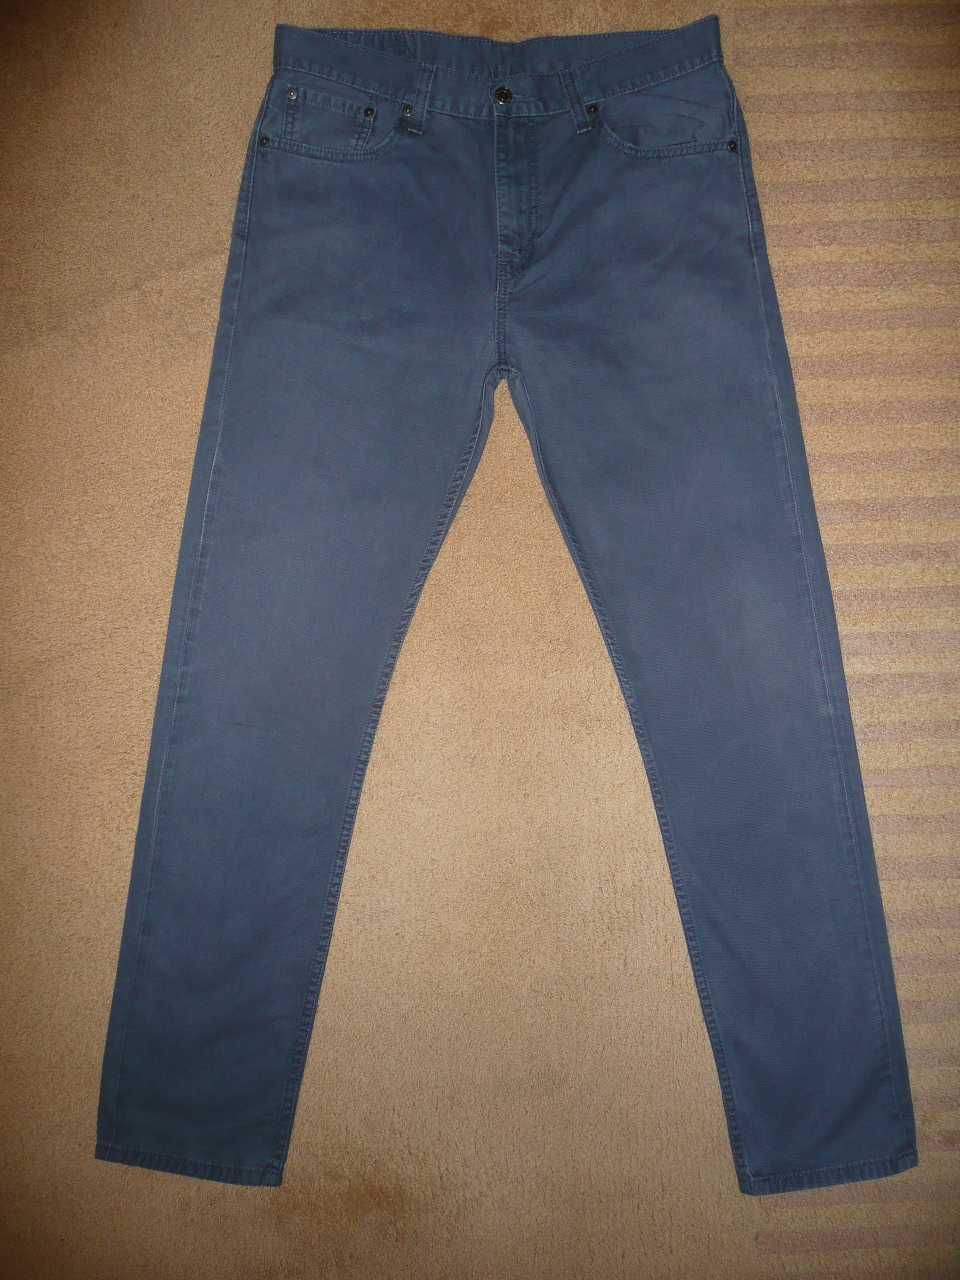 Spodnie dżinsy LEVIS 508 W32/L34=44,5/112m jeansy